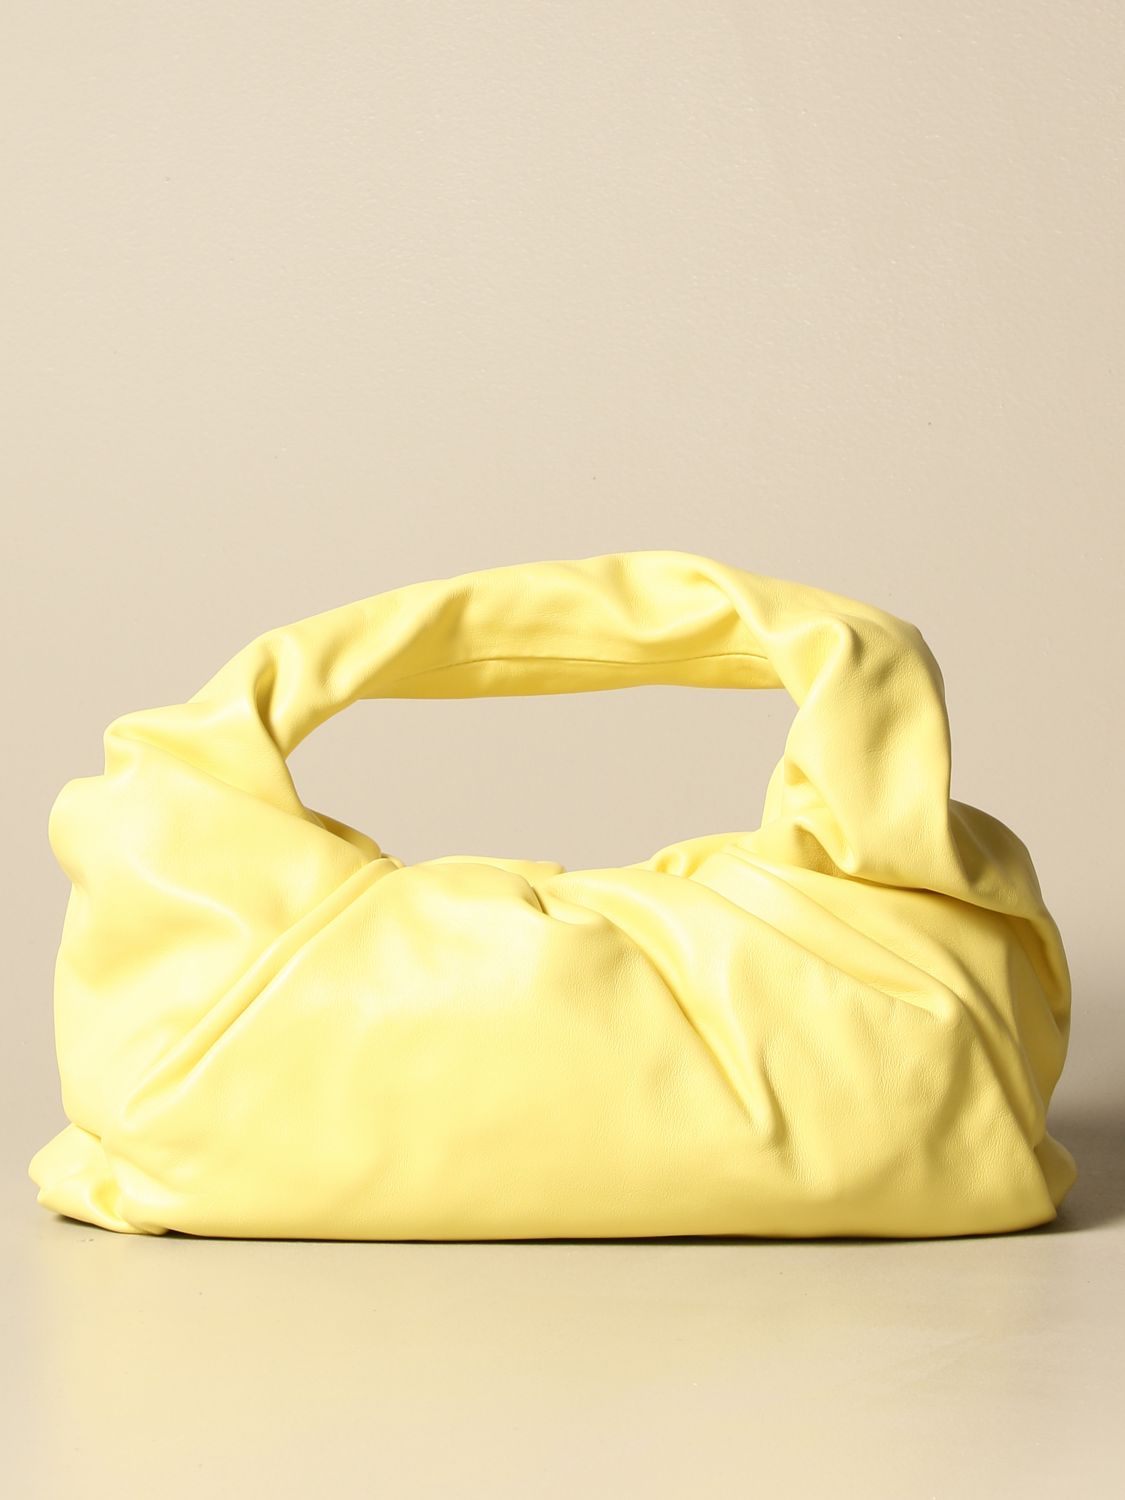 BOTTEGA VENETA: The Shoulder Pouch leather bag - Yellow Cream  Bottega  Veneta shoulder bag 610524 VCP40 online at